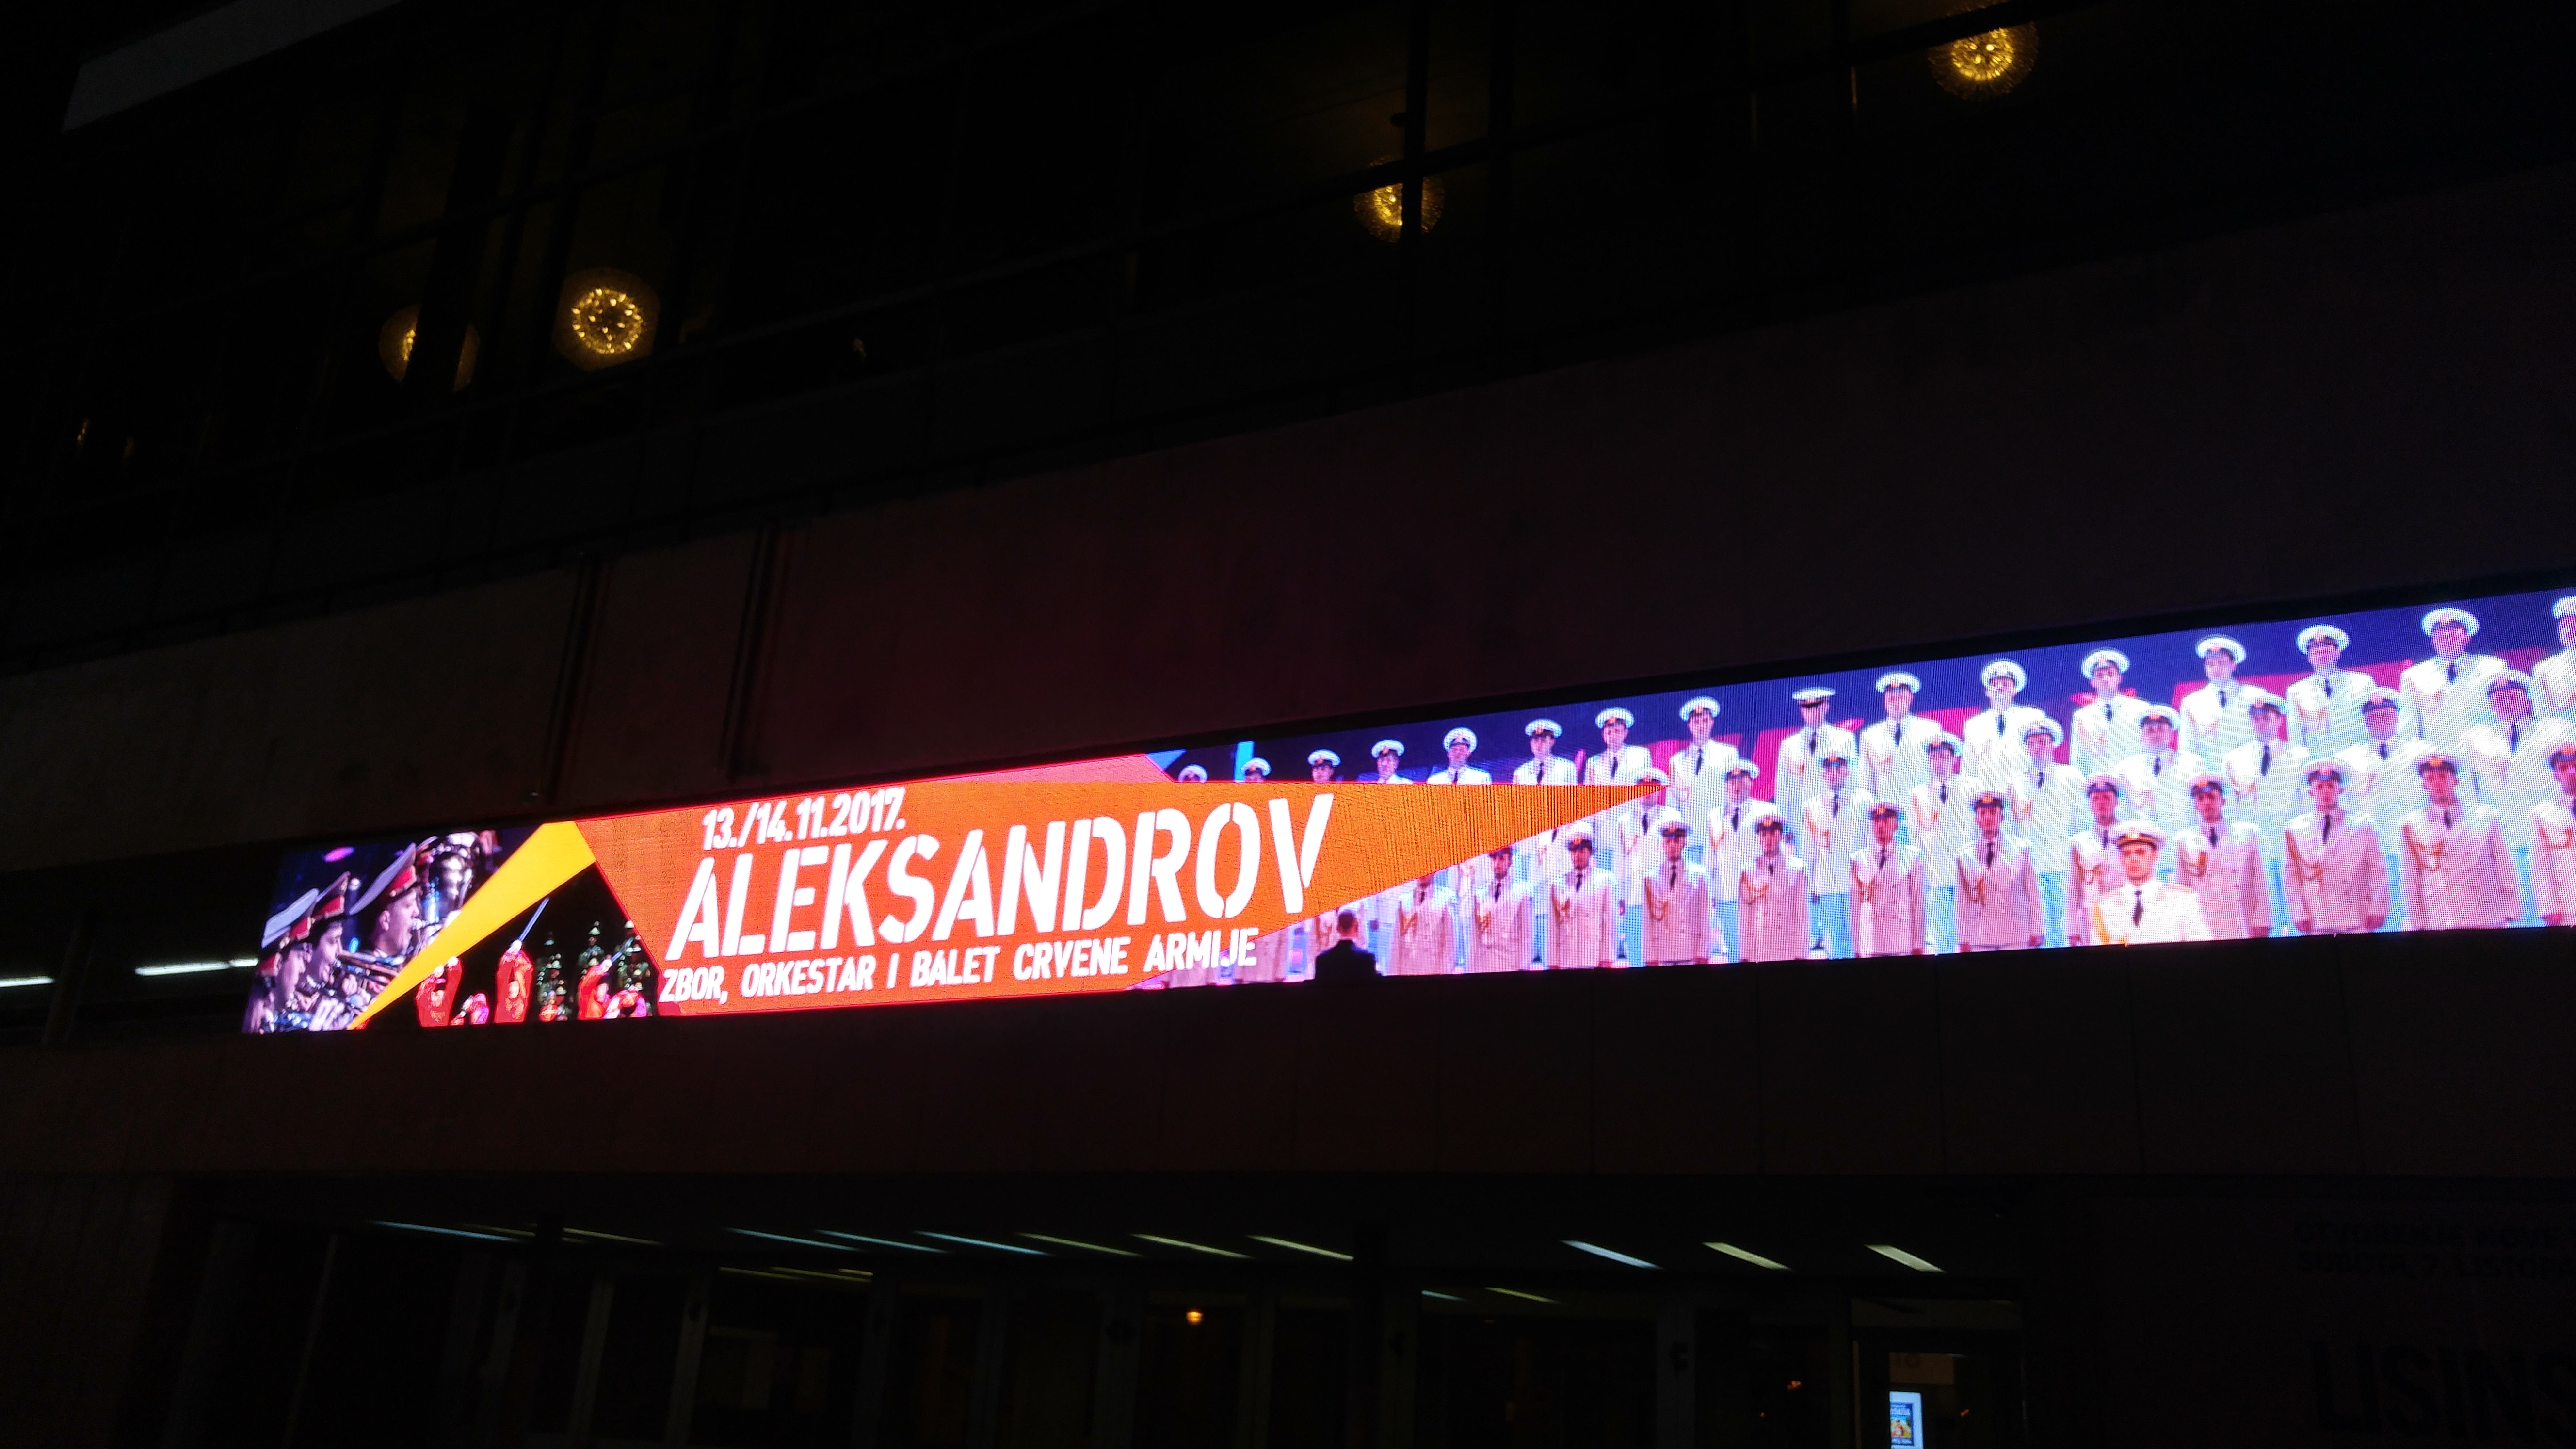 Alexandrov